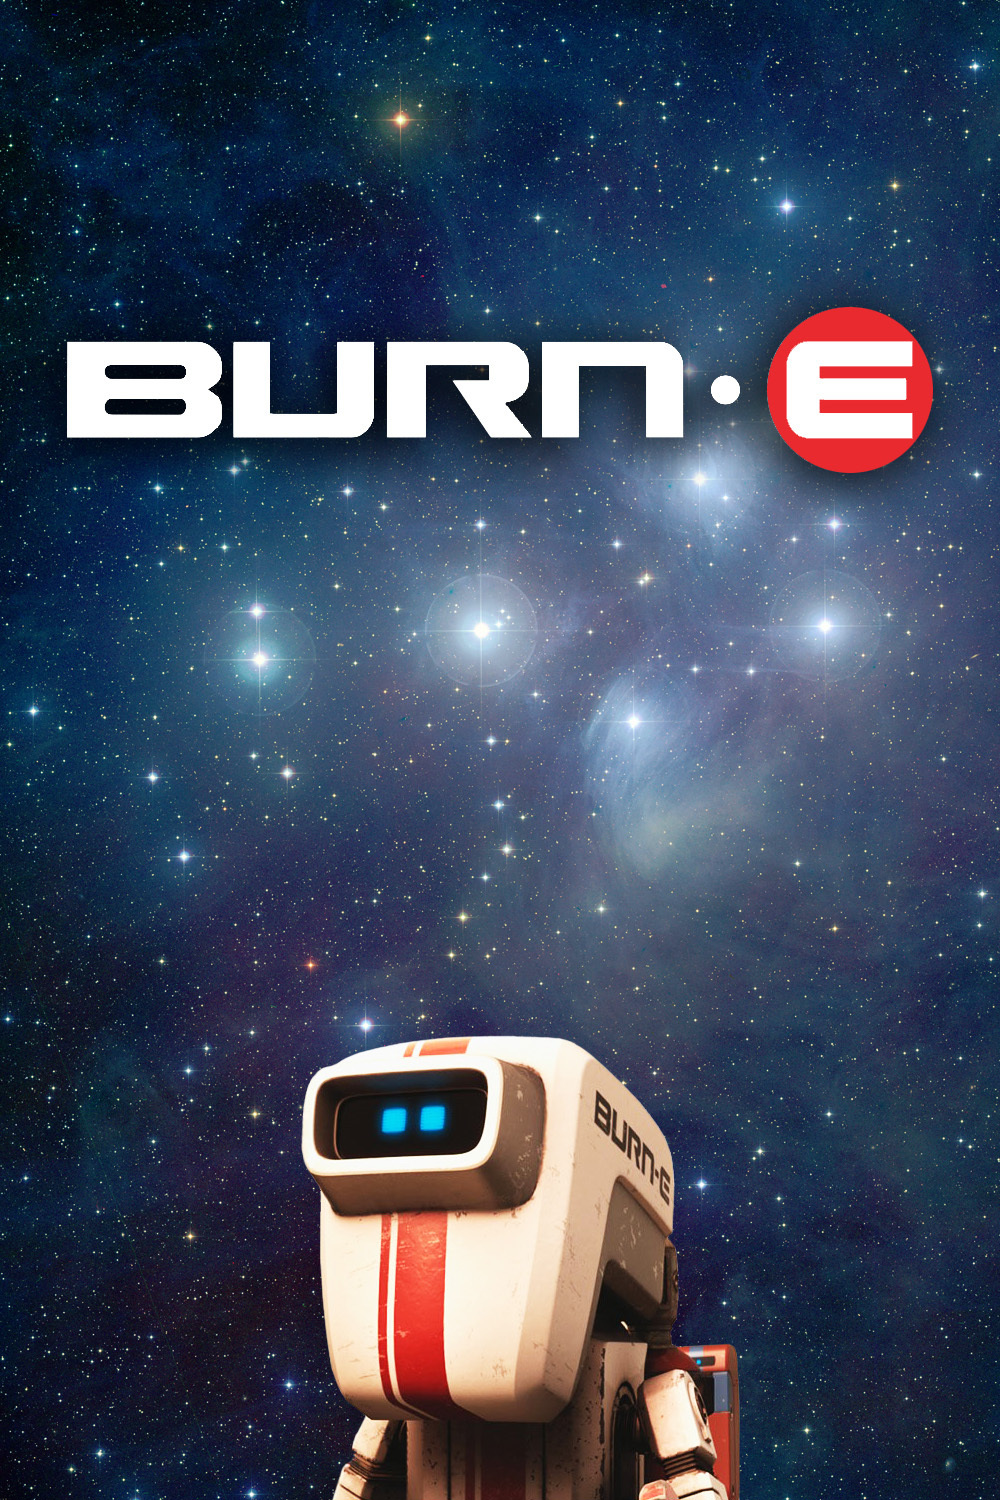 BURN-E (2008)